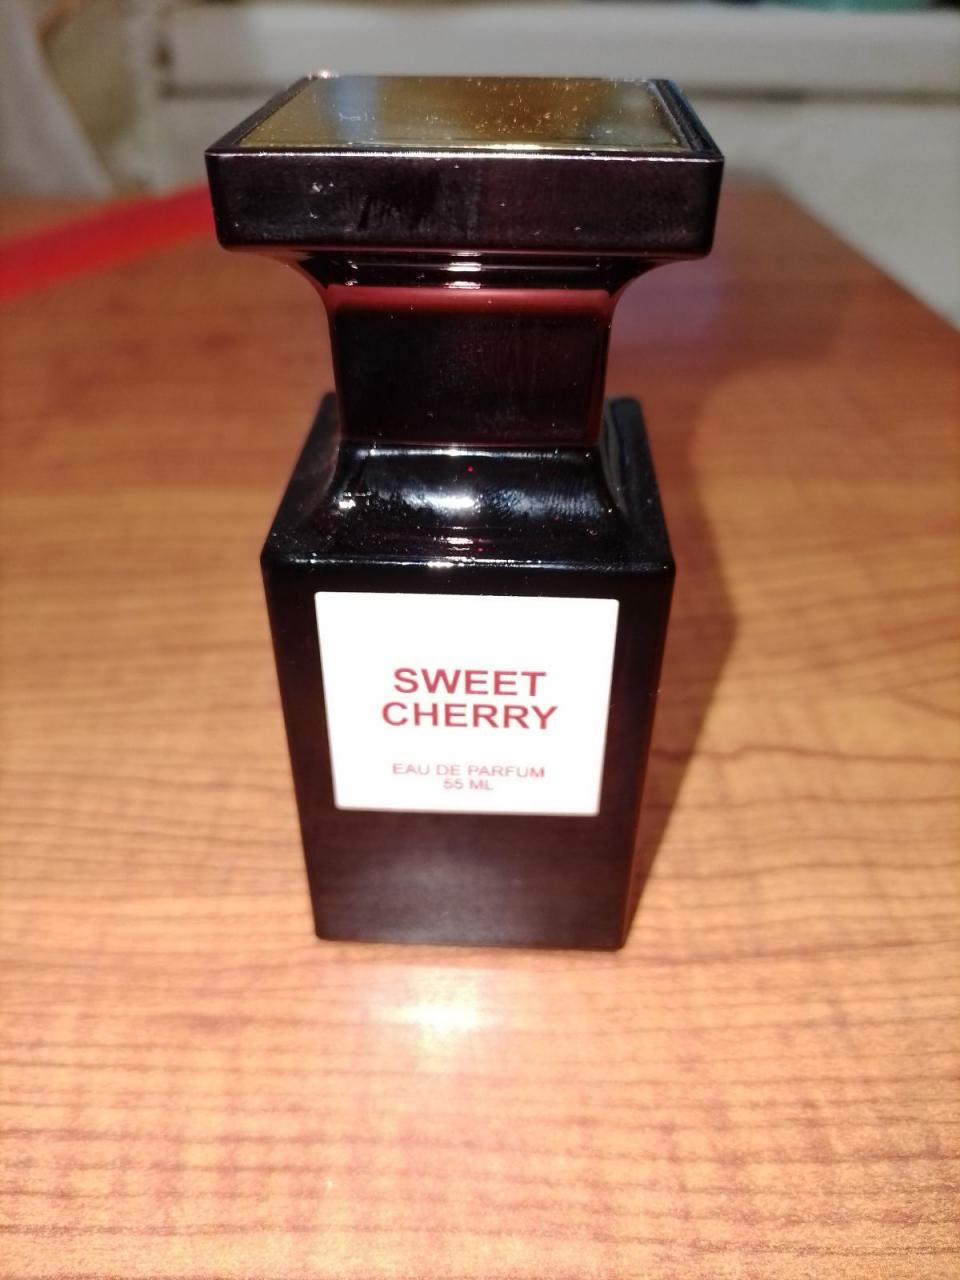 Отзыв на товар: Туалетная вода La Vie Sweet Cherry Lost Cherry. Dilis Parfum.